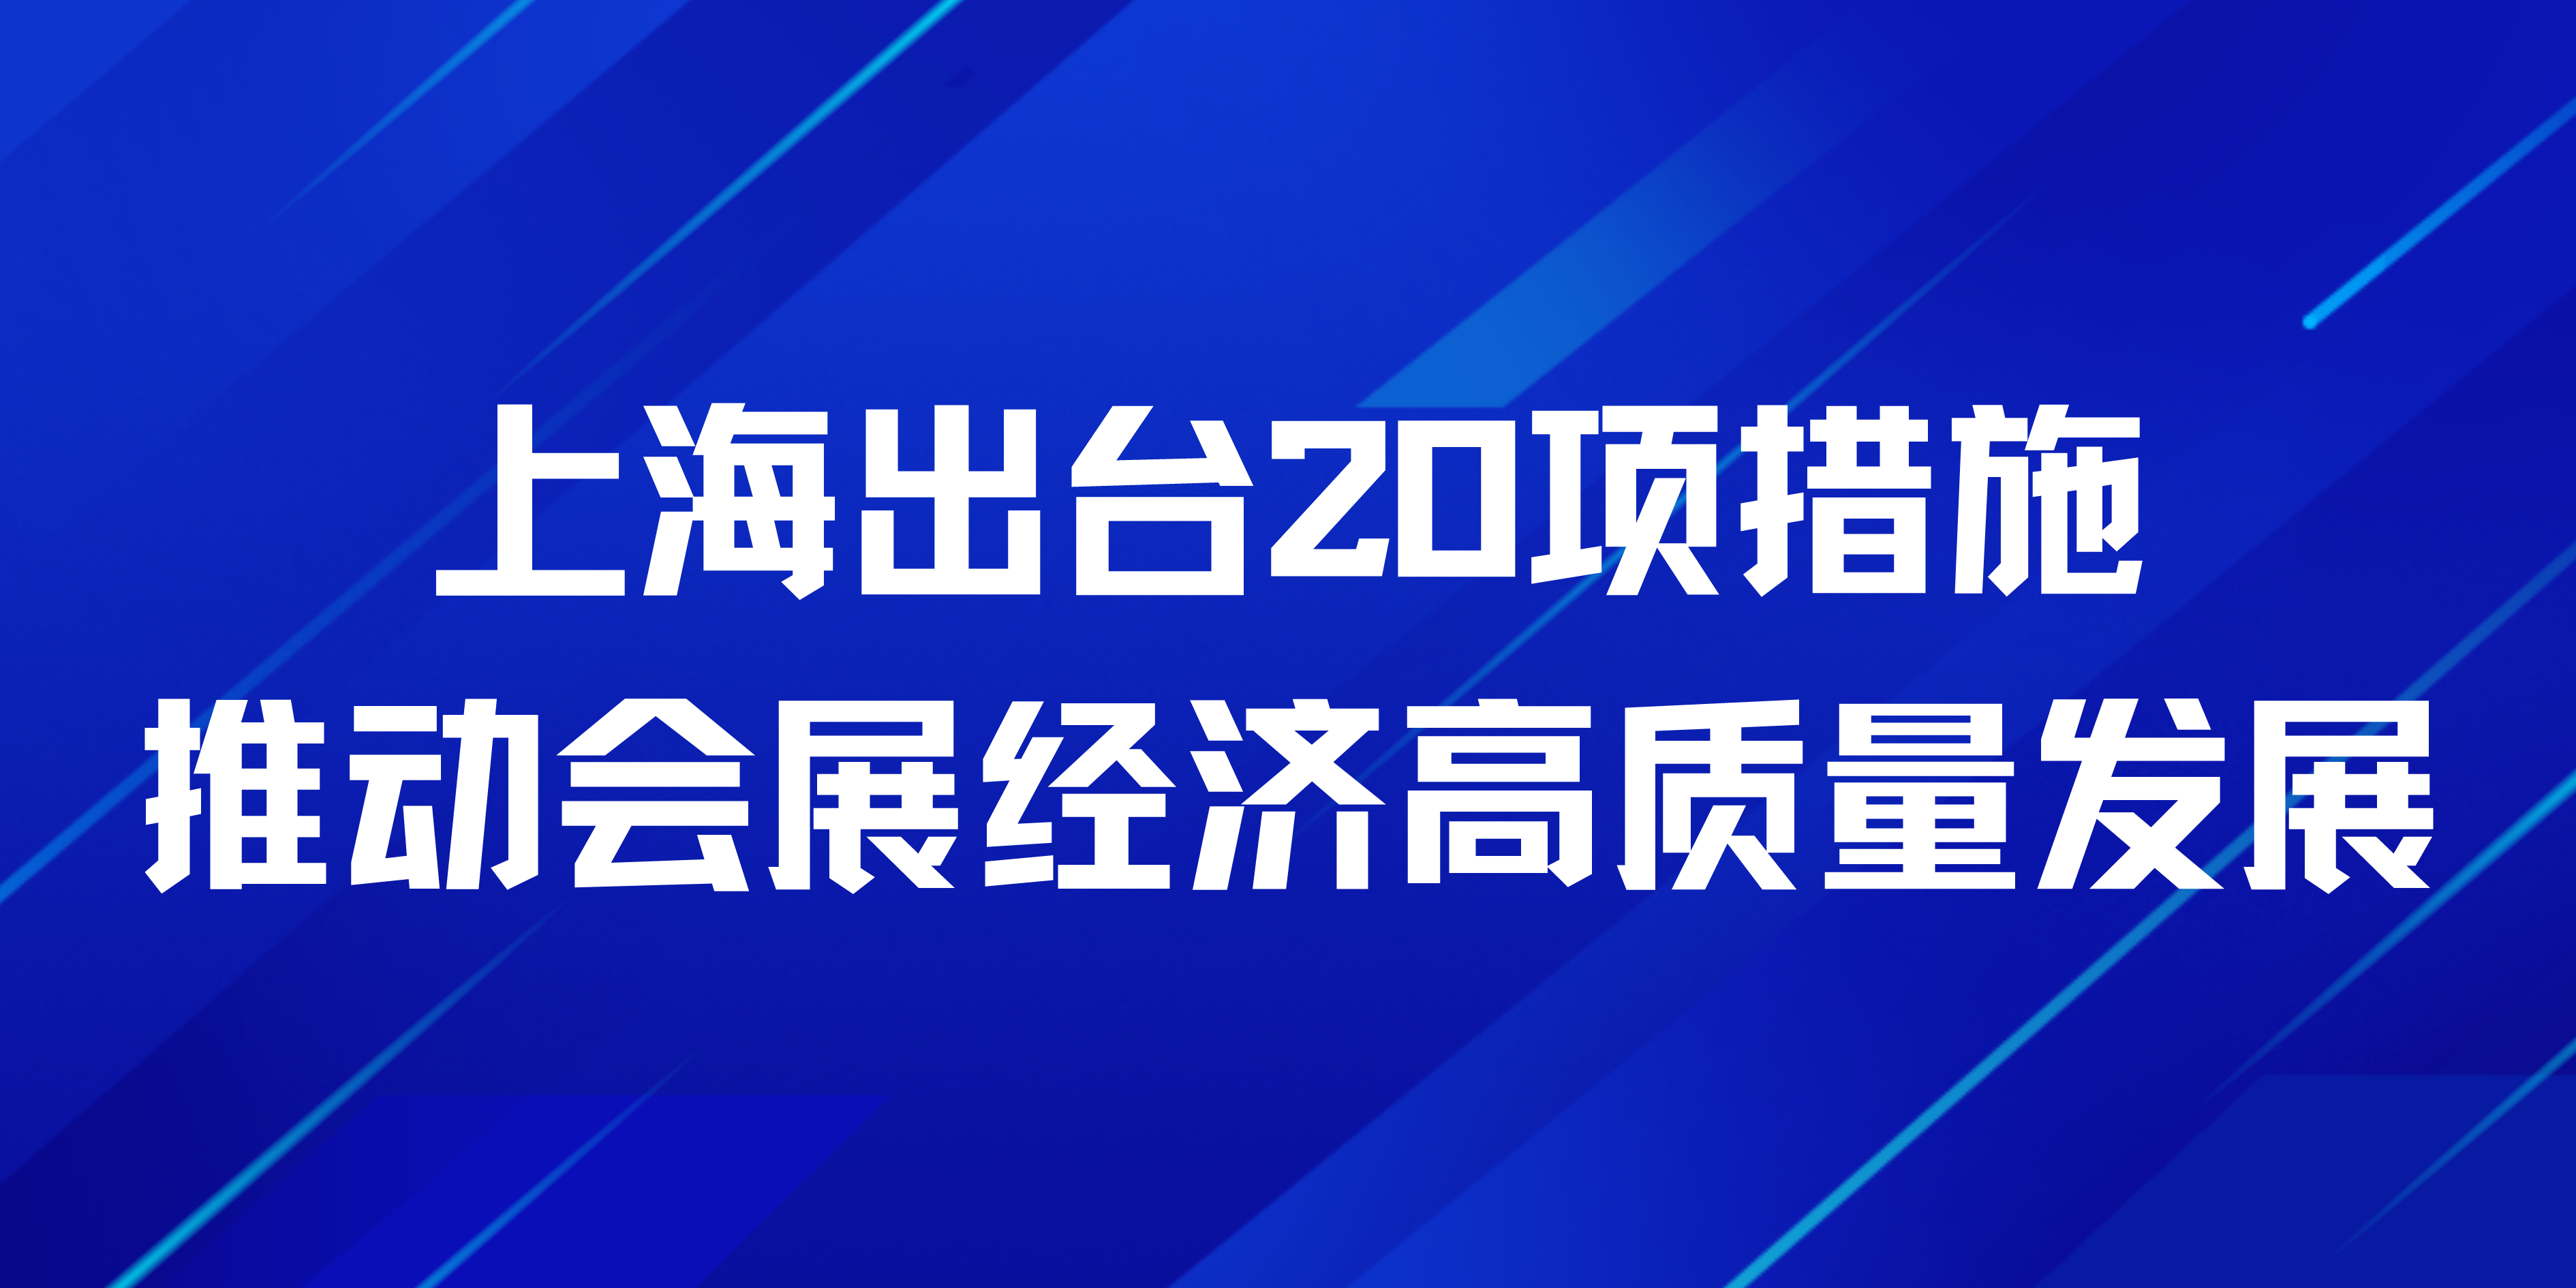 上海出台20项措施推动会展经济高质量发展